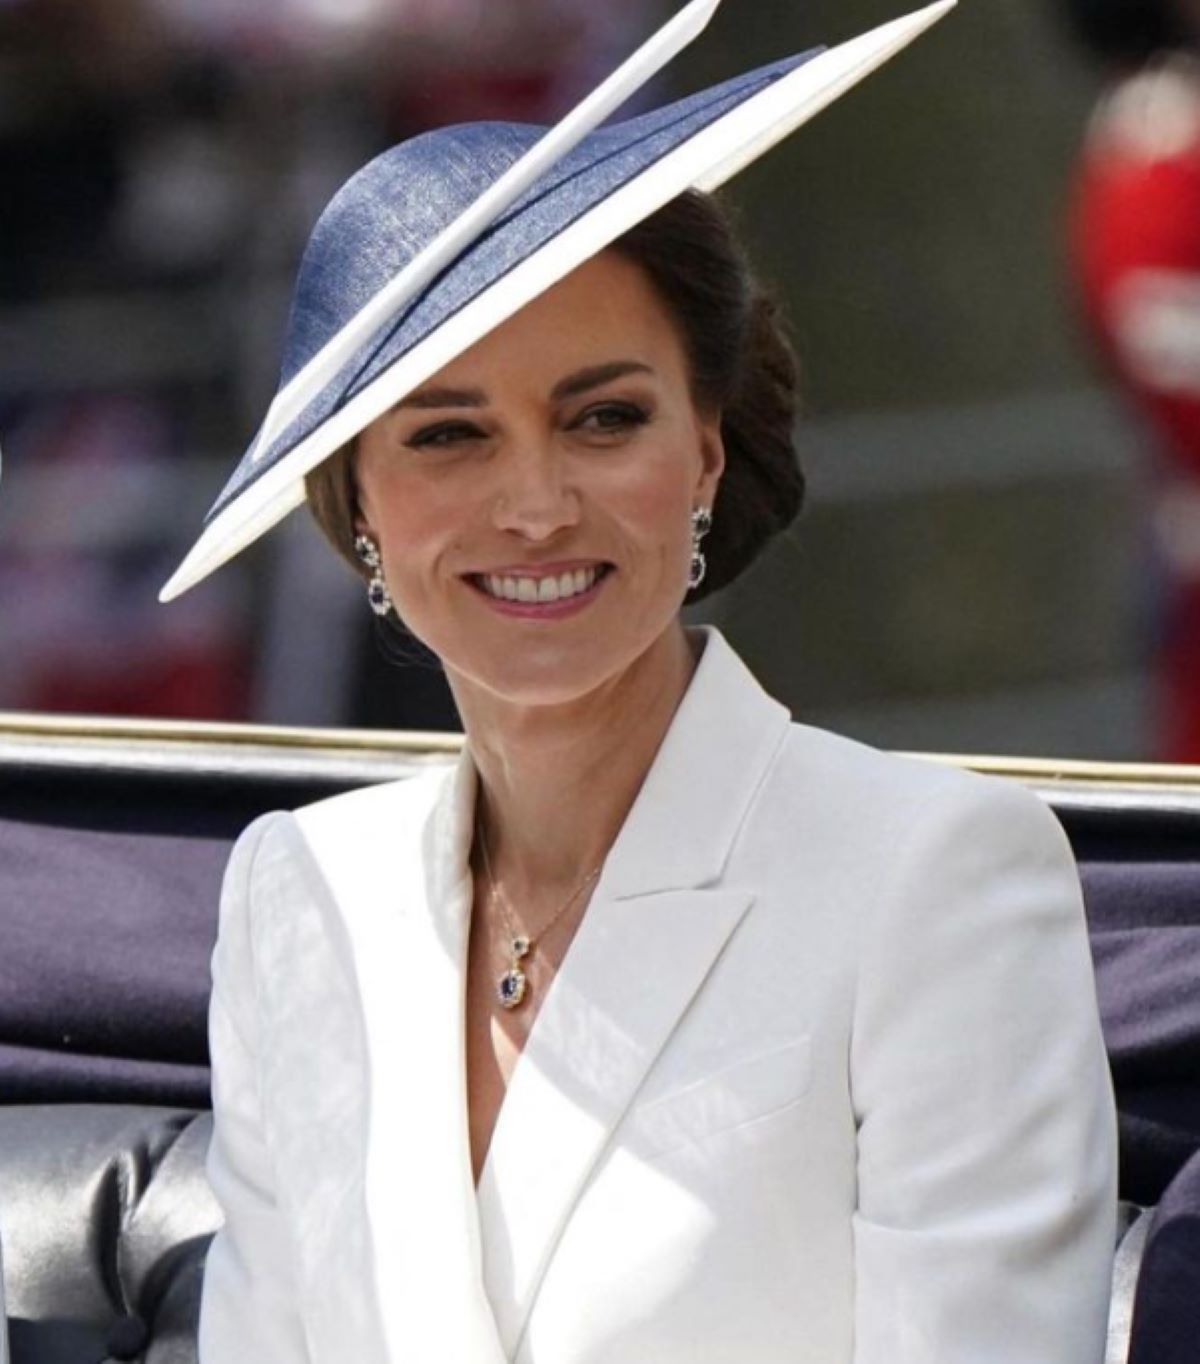 “Eccola, guardate”. Kate Middleton, prime immagini e caos dopo settimane di silenzi e ansia